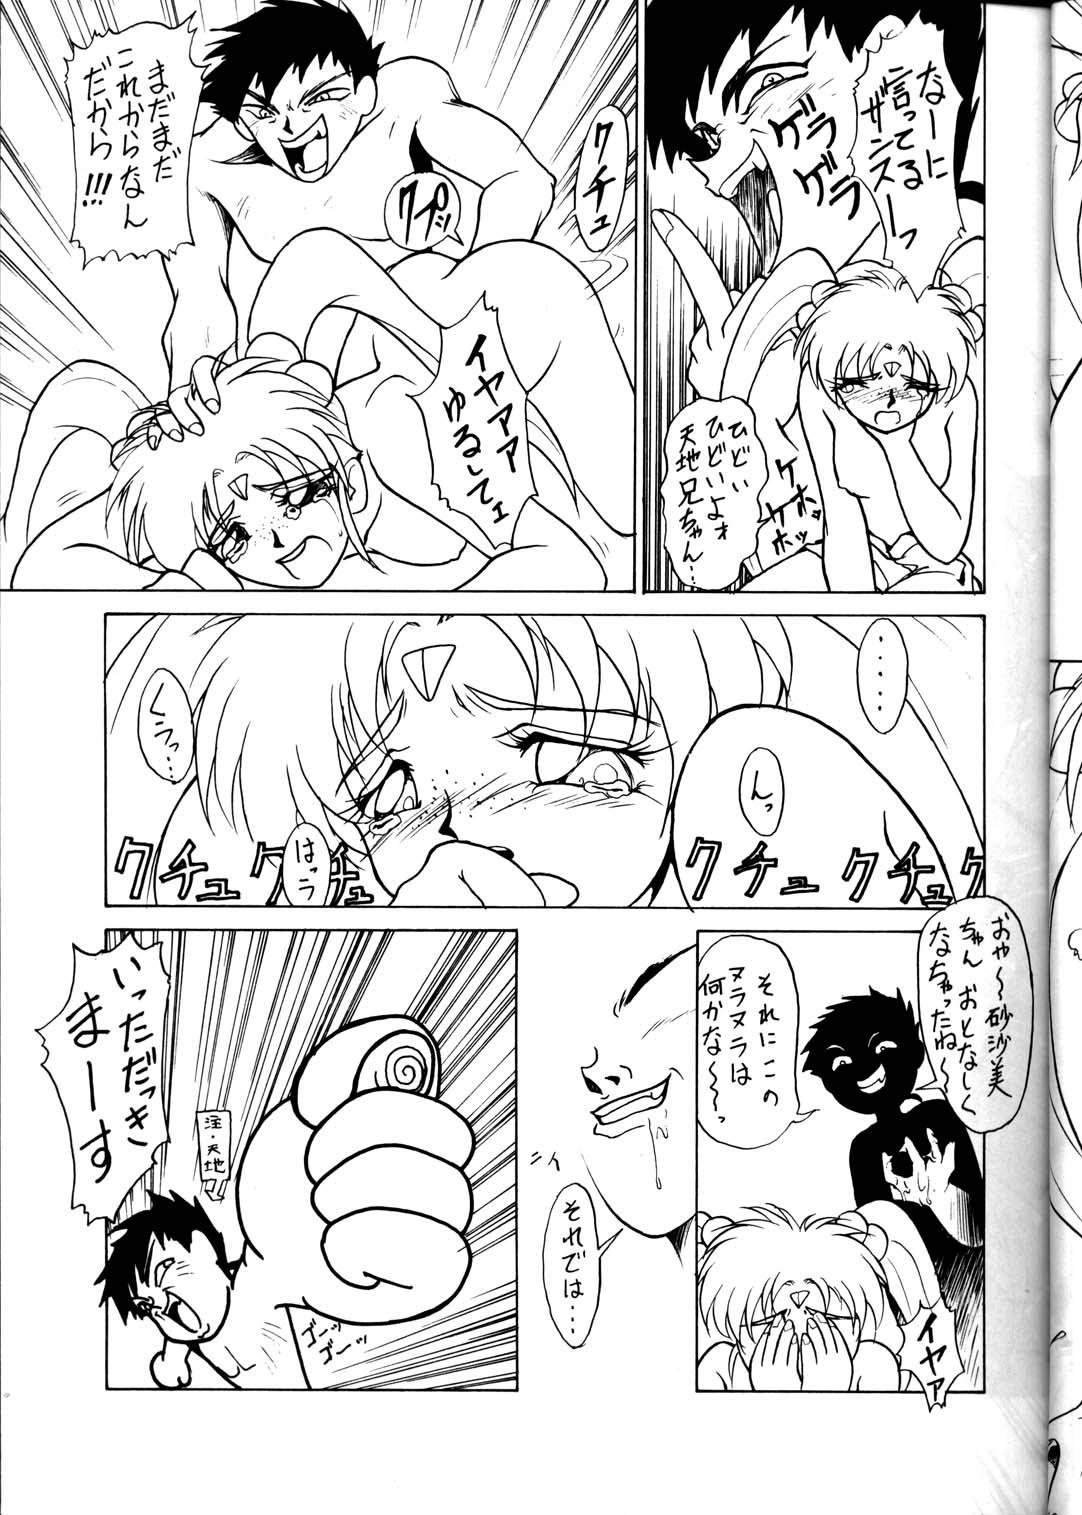 Kashima Option 5 Vol. 01 - Darkstalkers Tenchi muyo Akazukin cha cha Giant robo Mahoujin guru guru Adolescente - Page 12